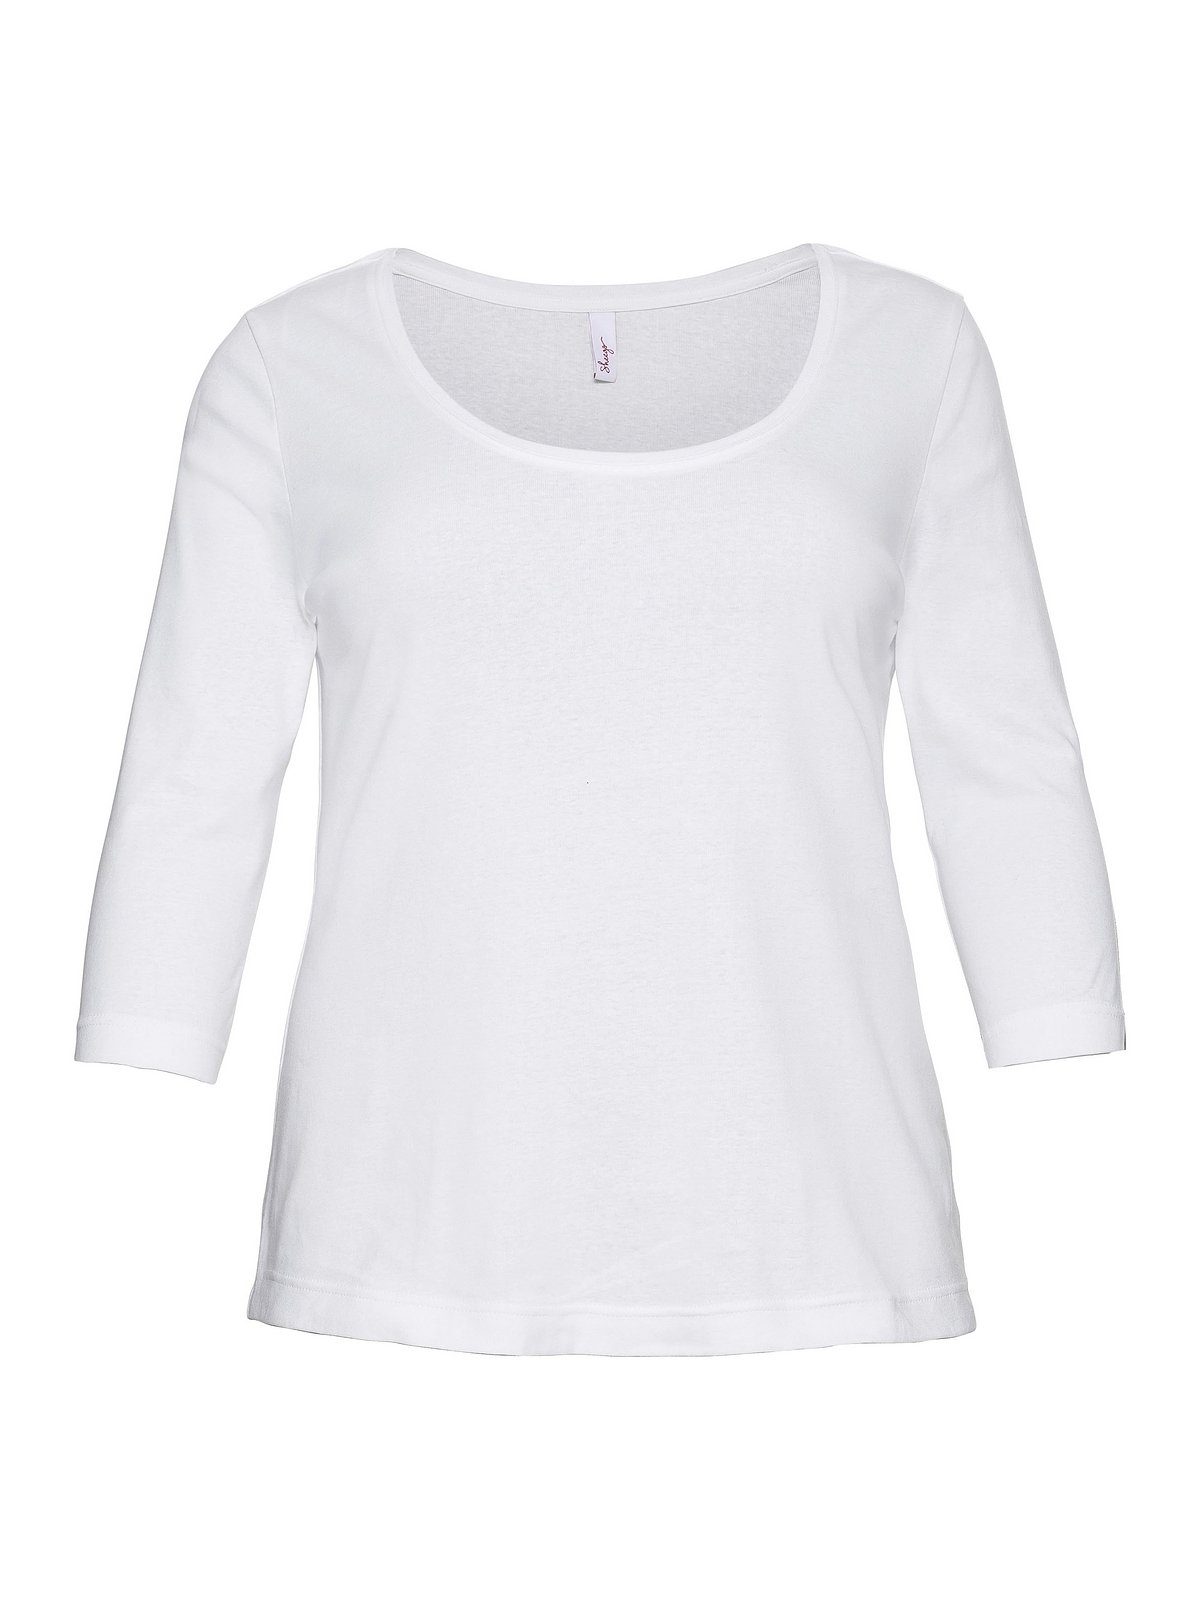 Baumwolle weiß 3/4-Arm-Shirt reiner Große Sheego Größen aus